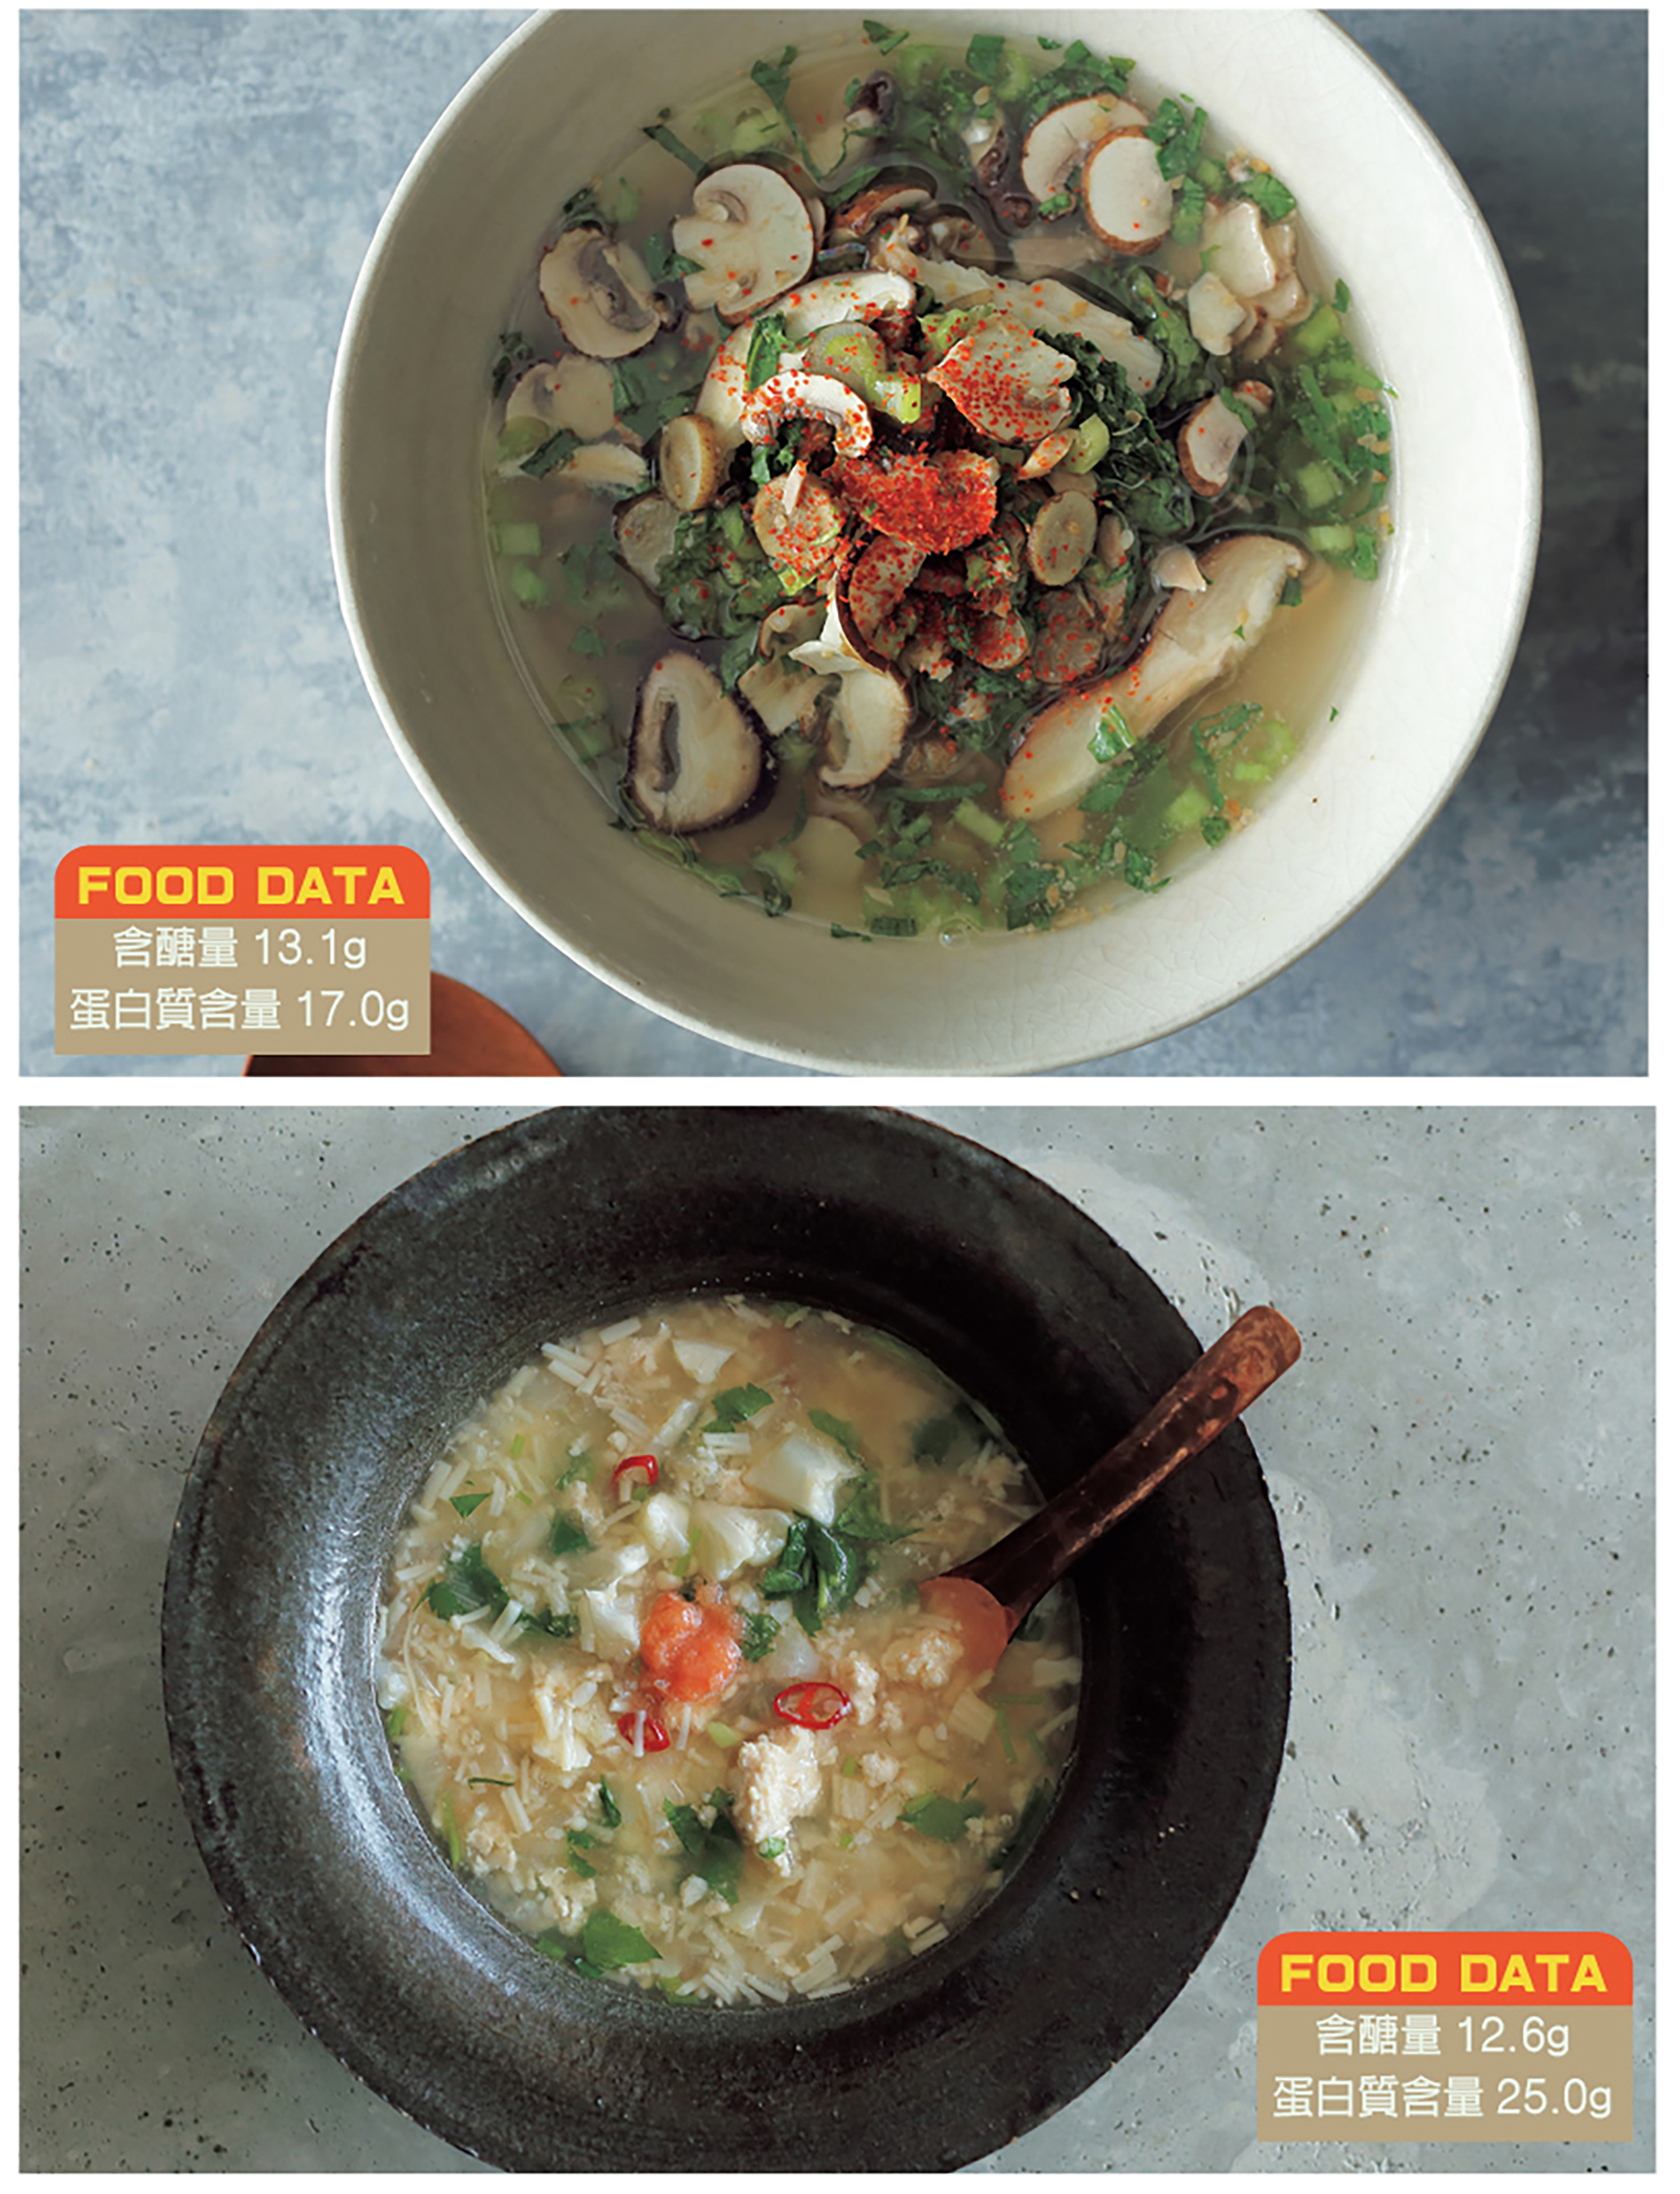 上圖：鮪魚菇菇湯、下圖：明太子花椰菜湯。